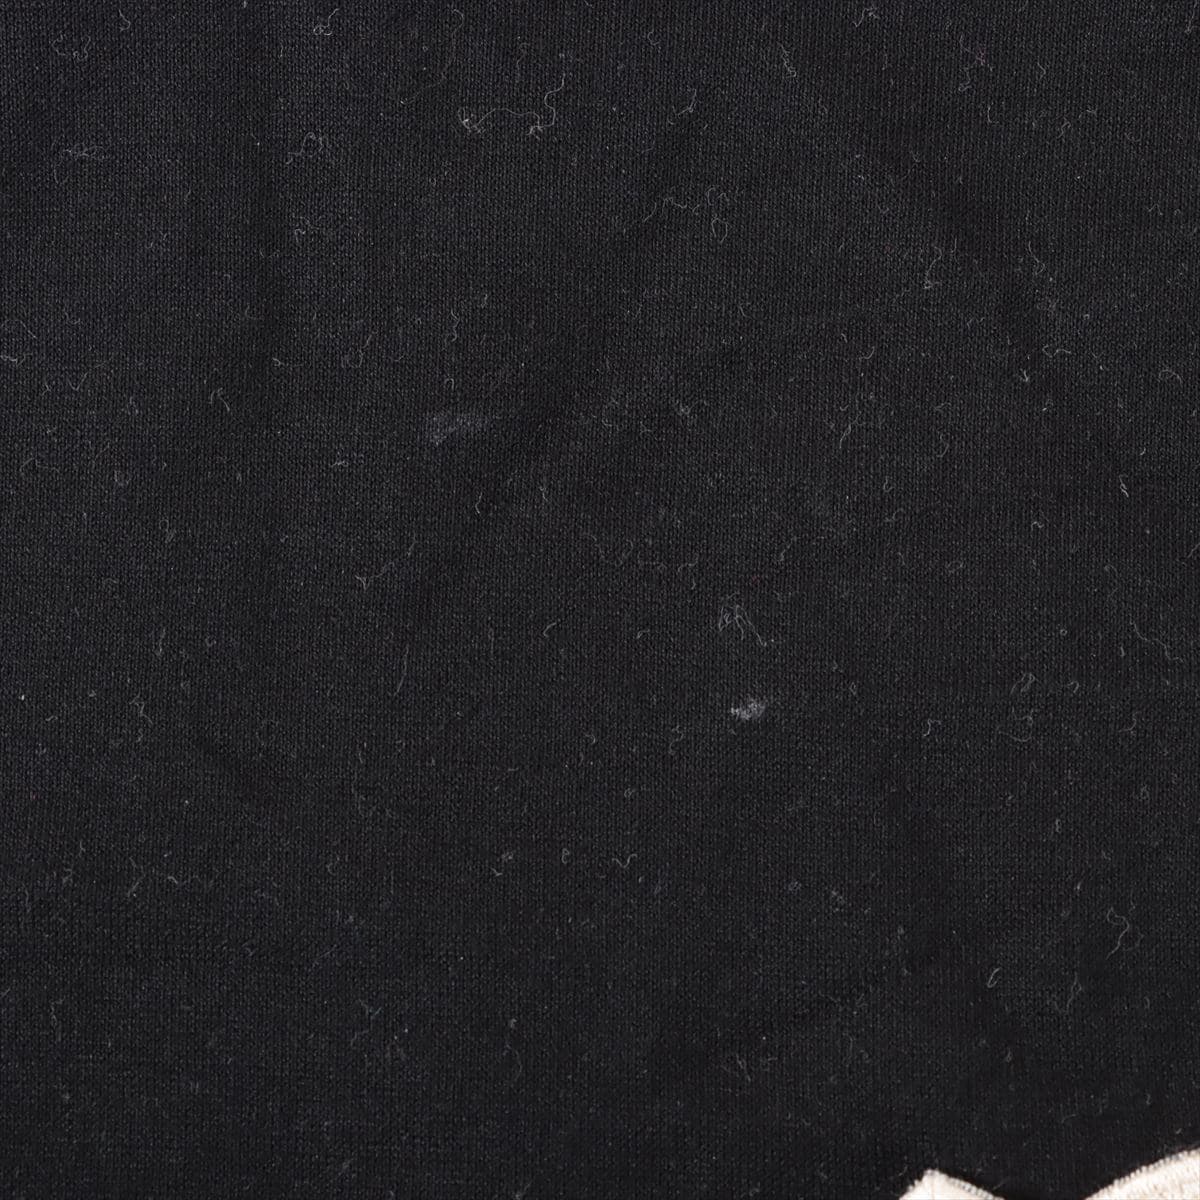 Moncler 21 years Cotton T-shirt XL Men's Black  H10918C00057 Patches